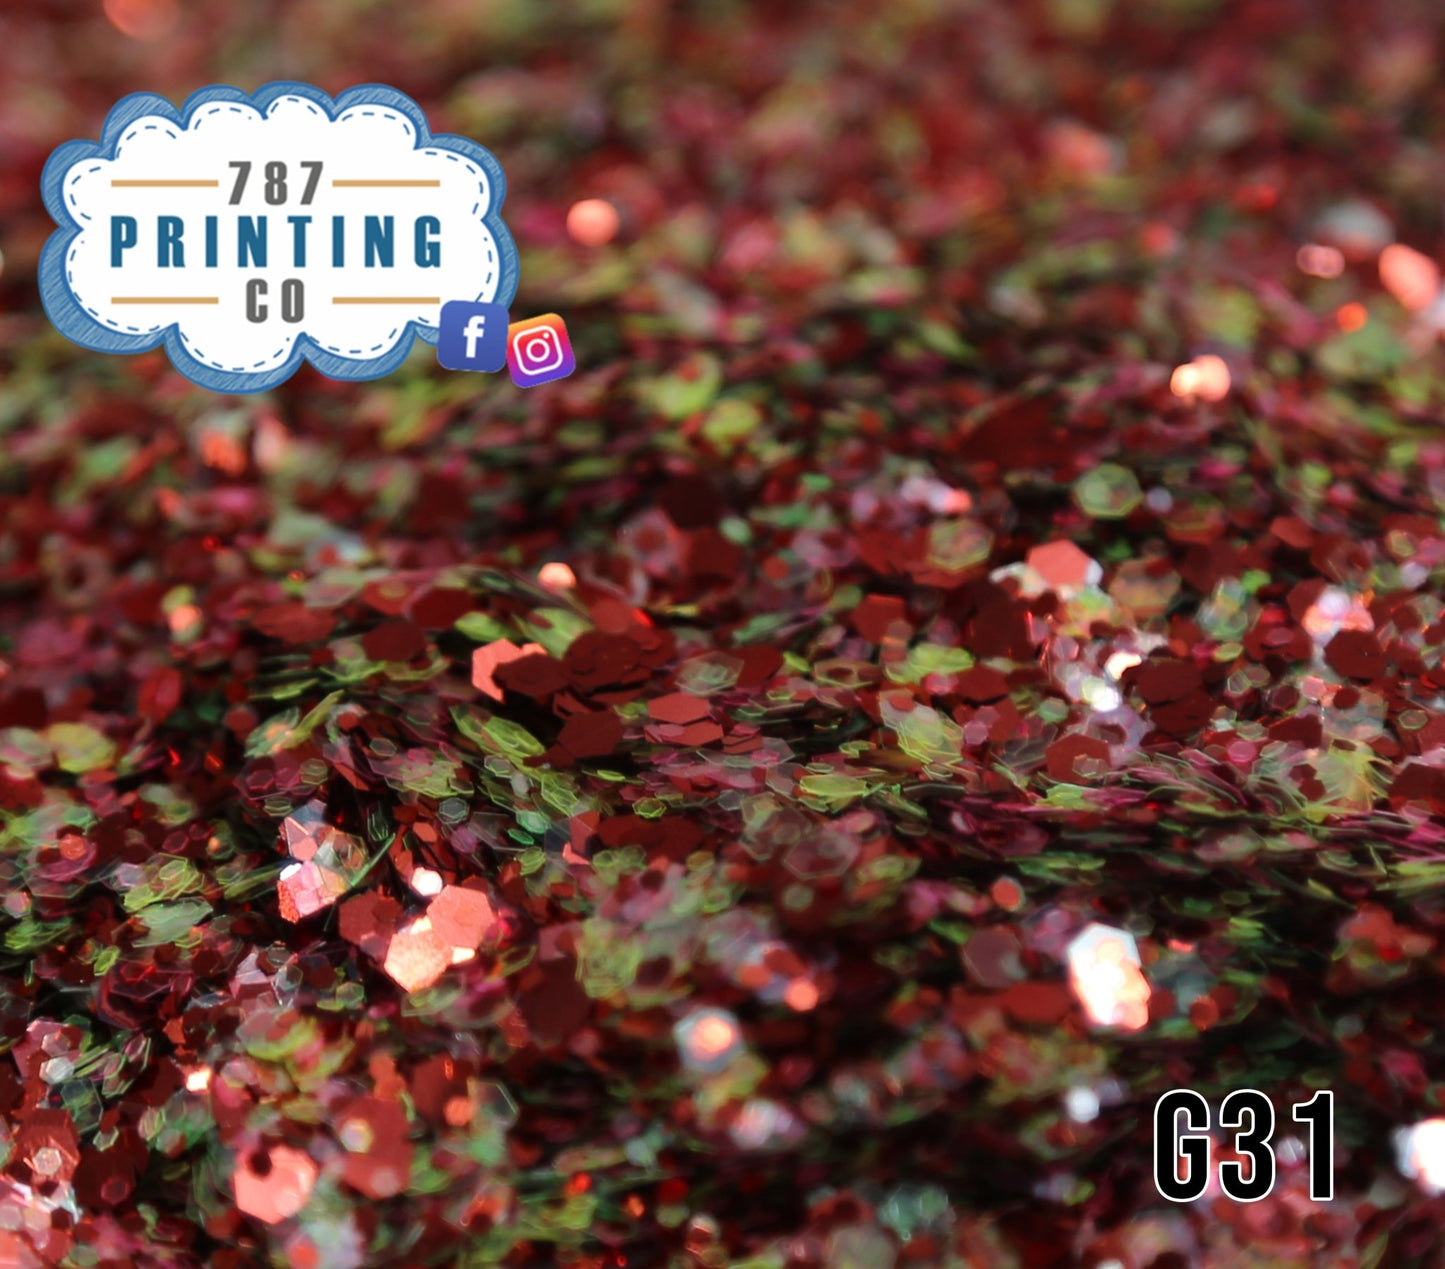 Flamboyán Chunky Mix Glitter (G31) - 787 Printing Co.